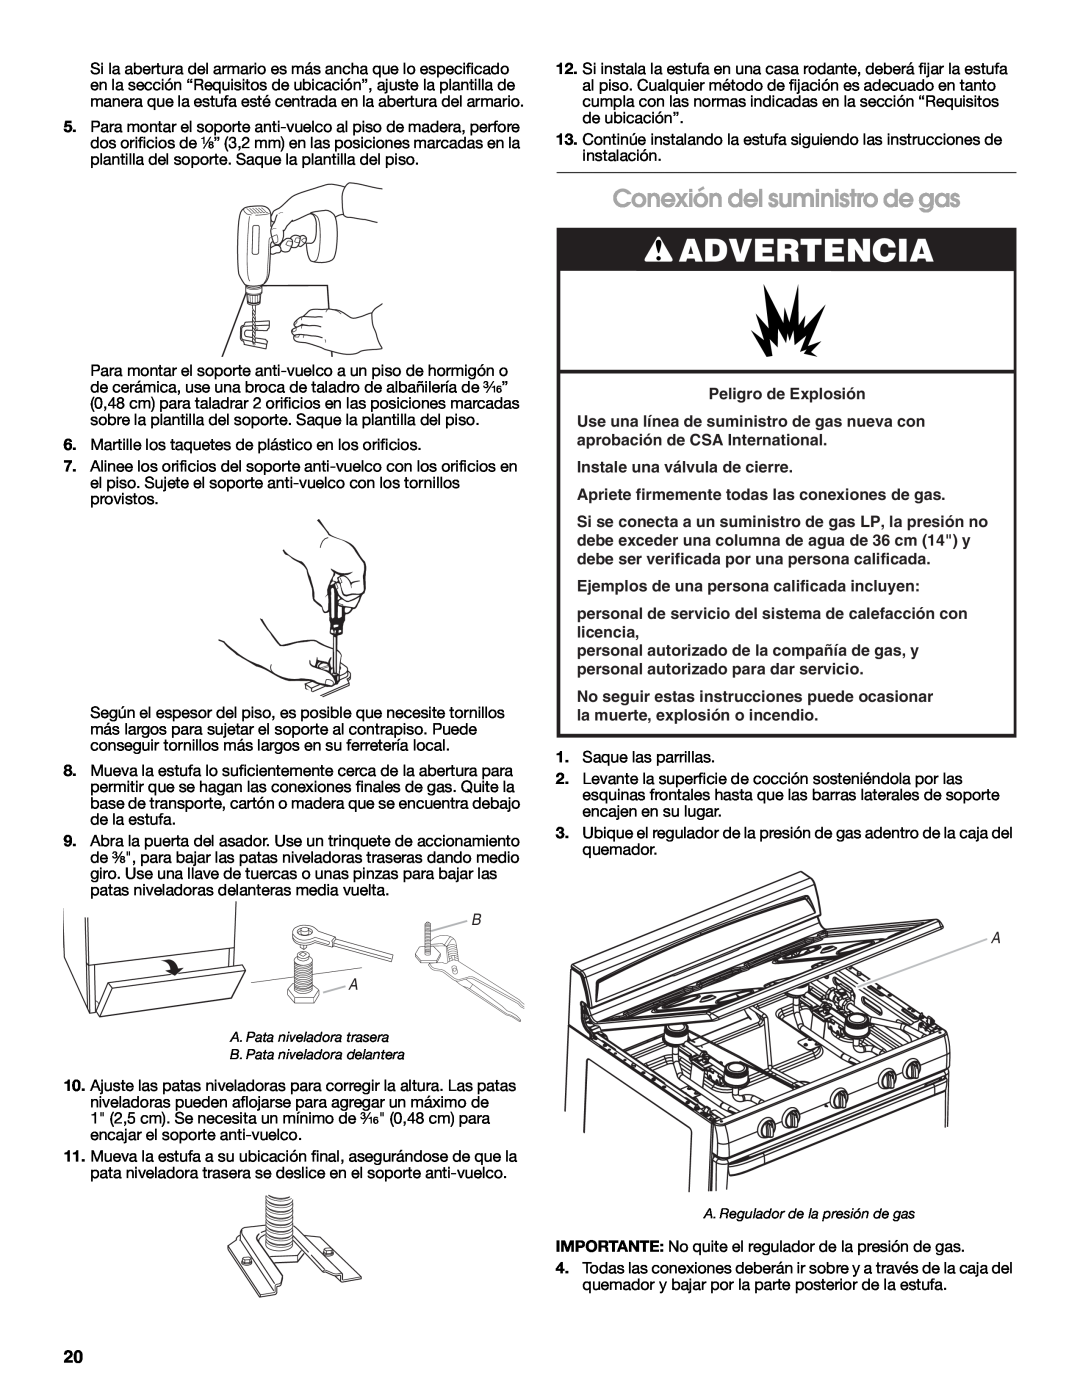 Estate W10121806C installation instructions Conexión del suministro de gas, Advertencia 